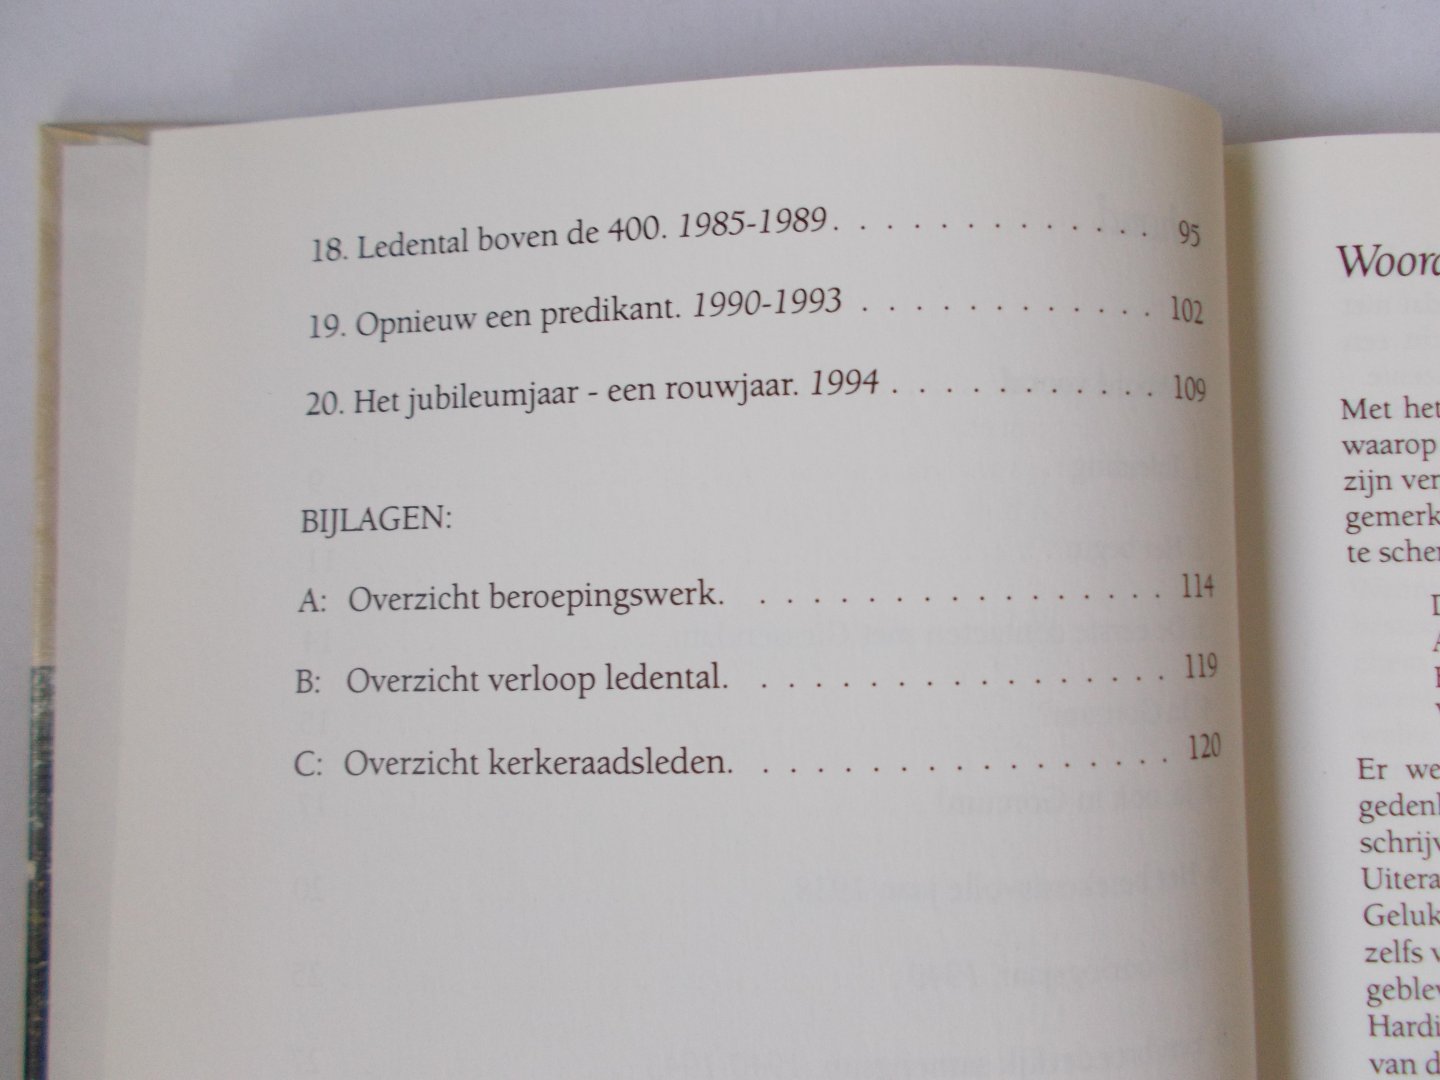 Knook, J - Van Uwe trouw en goedheid:  50 jaar Gereformeerde Gemeente te Gorinchem  1994